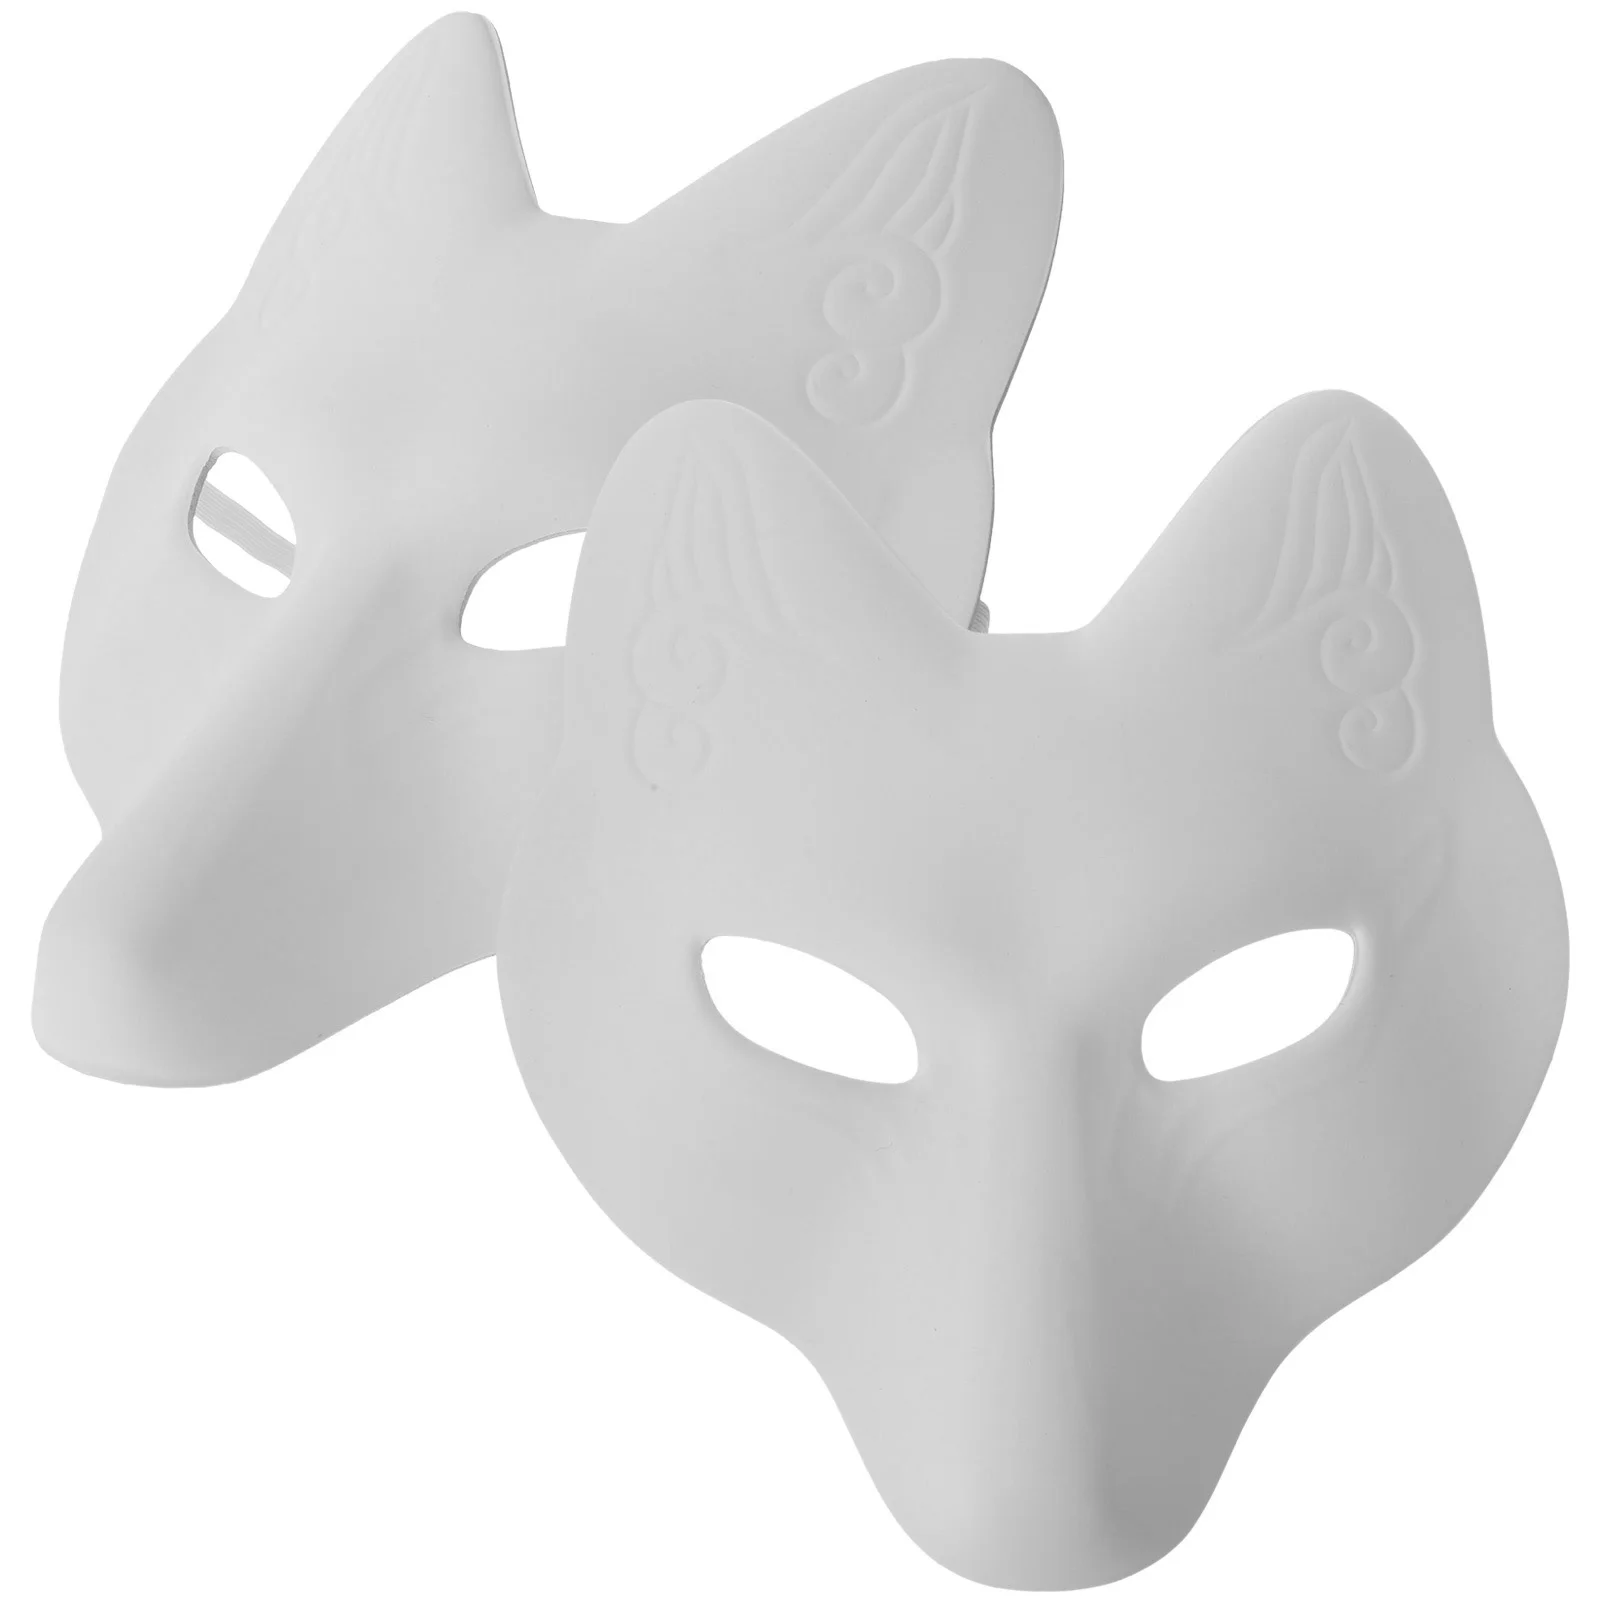 

Маска, маски, лиса, маскарадный костюм на Хэллоуин, косплей, пустая кошка, сделай сам, белые животные, глаза волка, териан, искусственное лицо, половина бумаги, японская